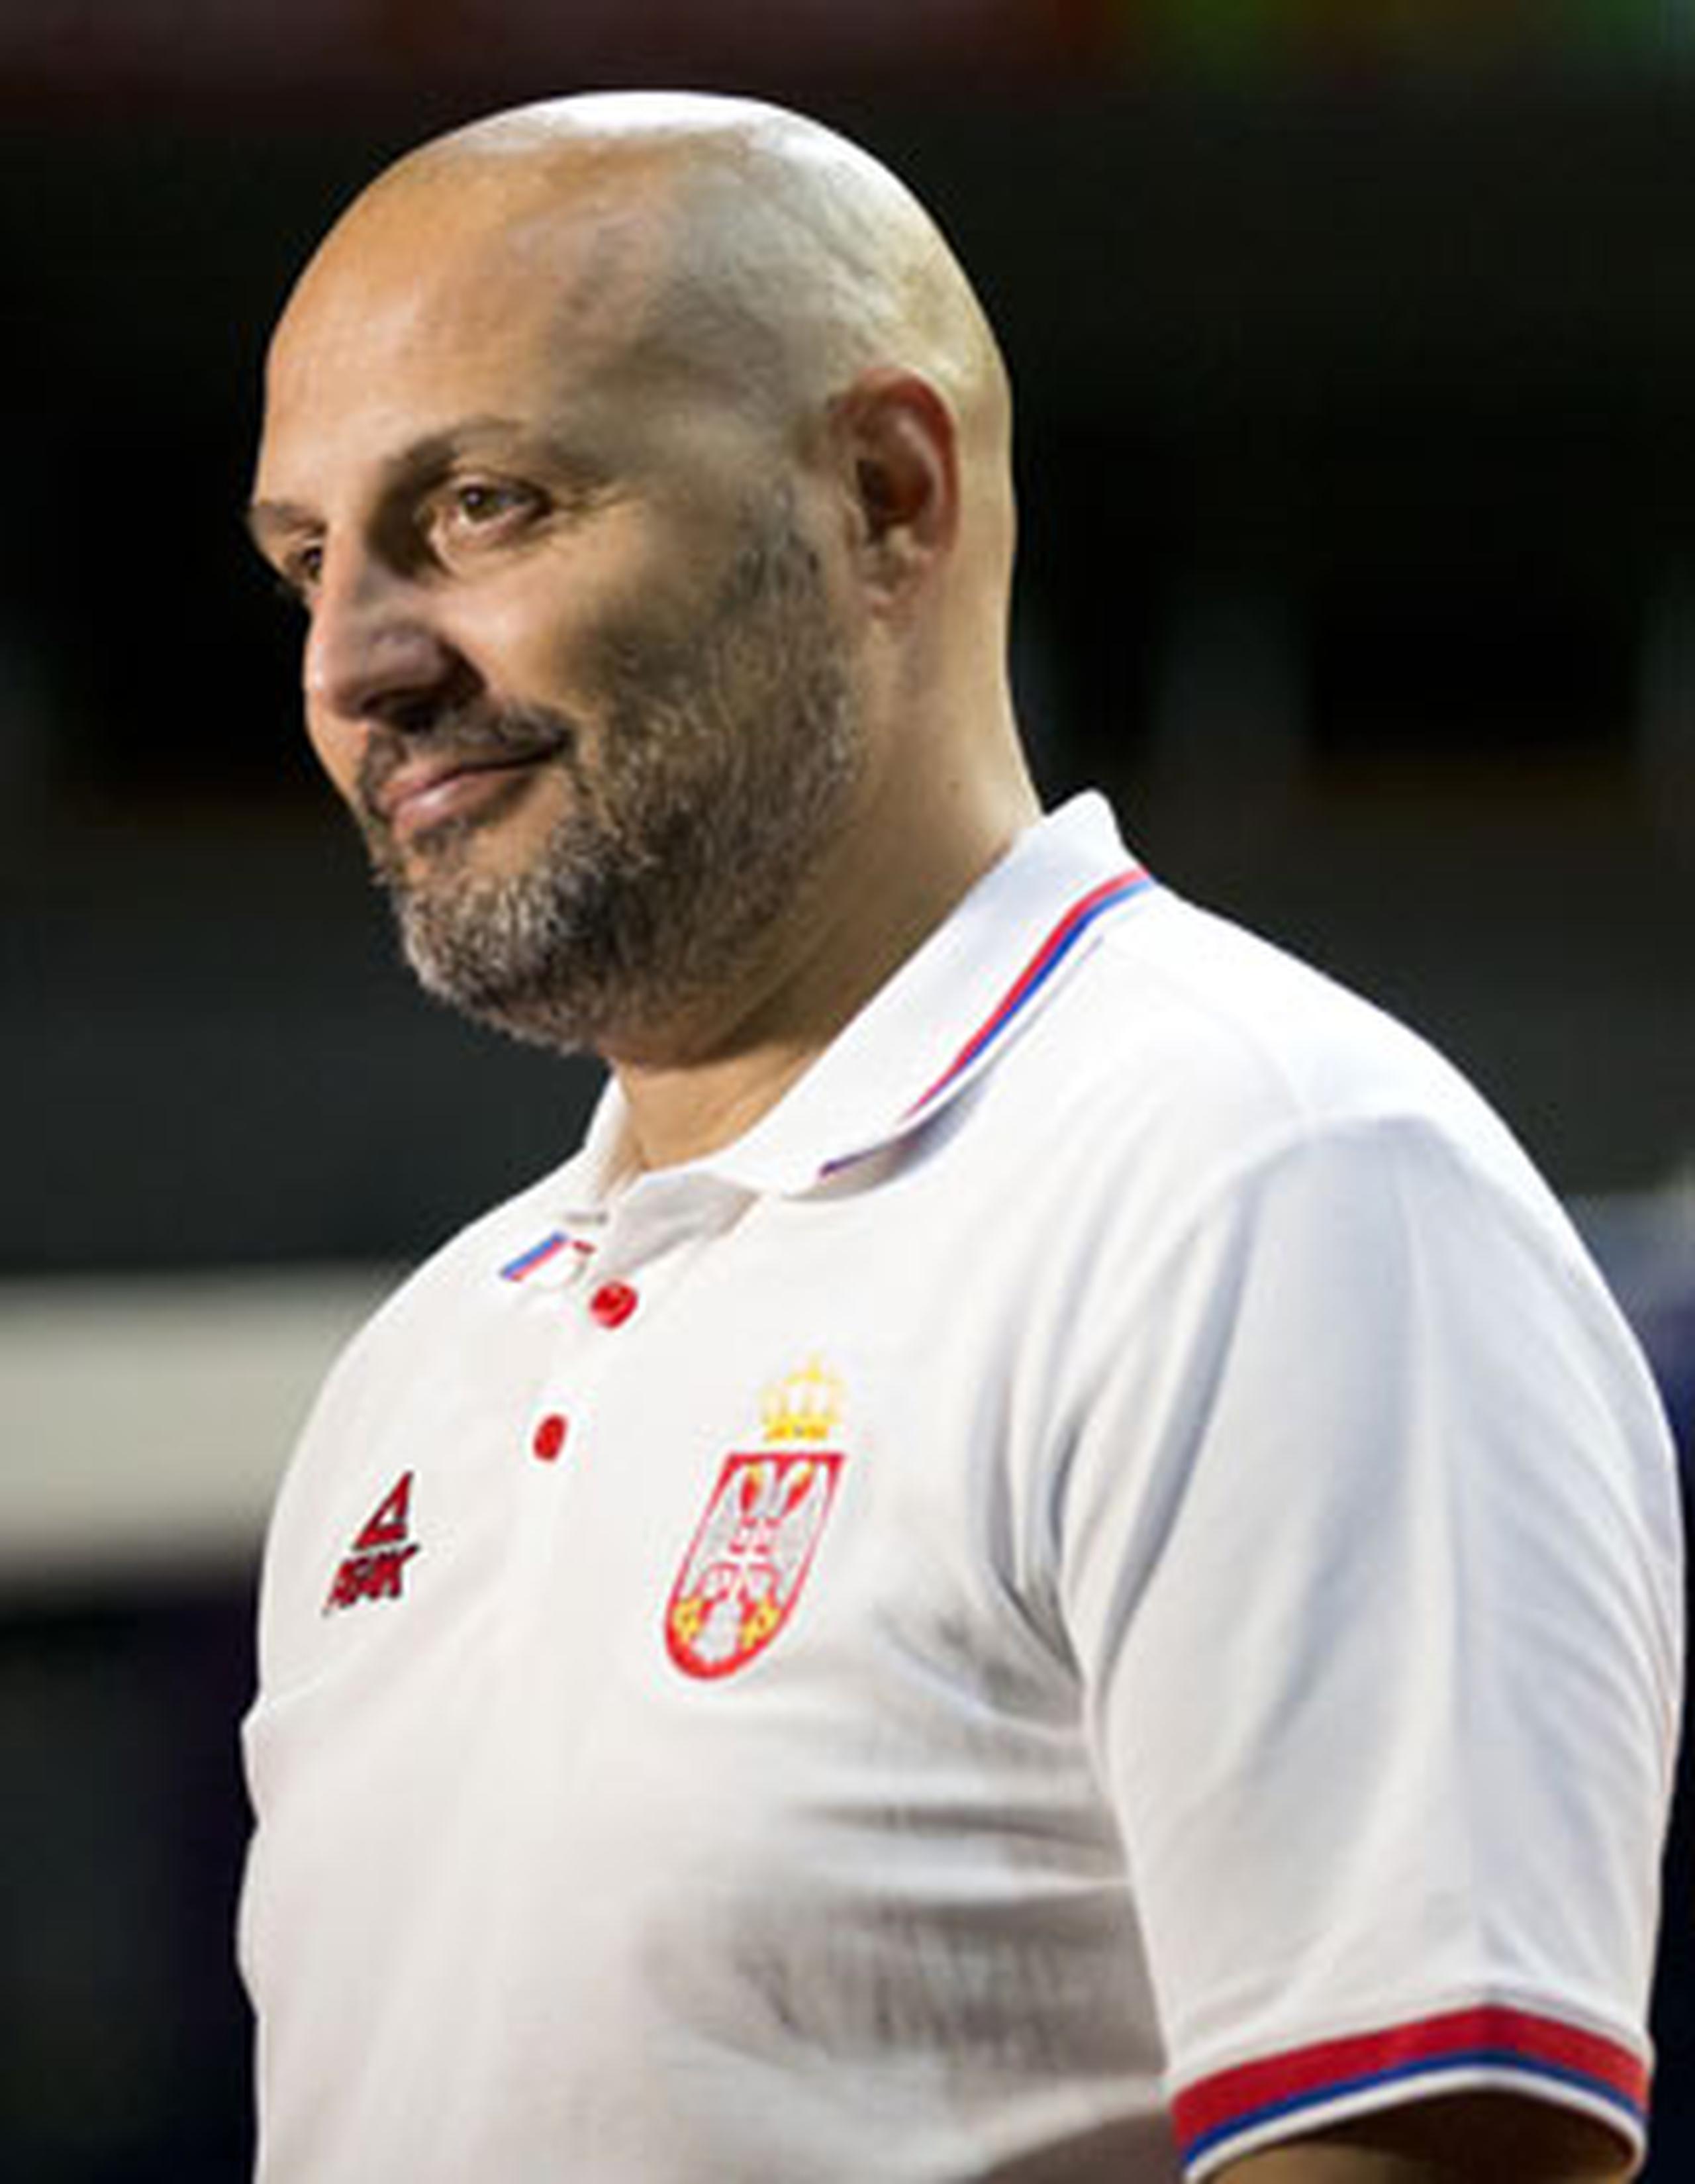 El dirigente Aleksandar “Sasha”  Dordevic es una de las leyendas del básquet serbio. (Enviado especial / tonito.zayas@gfrmedia.com)